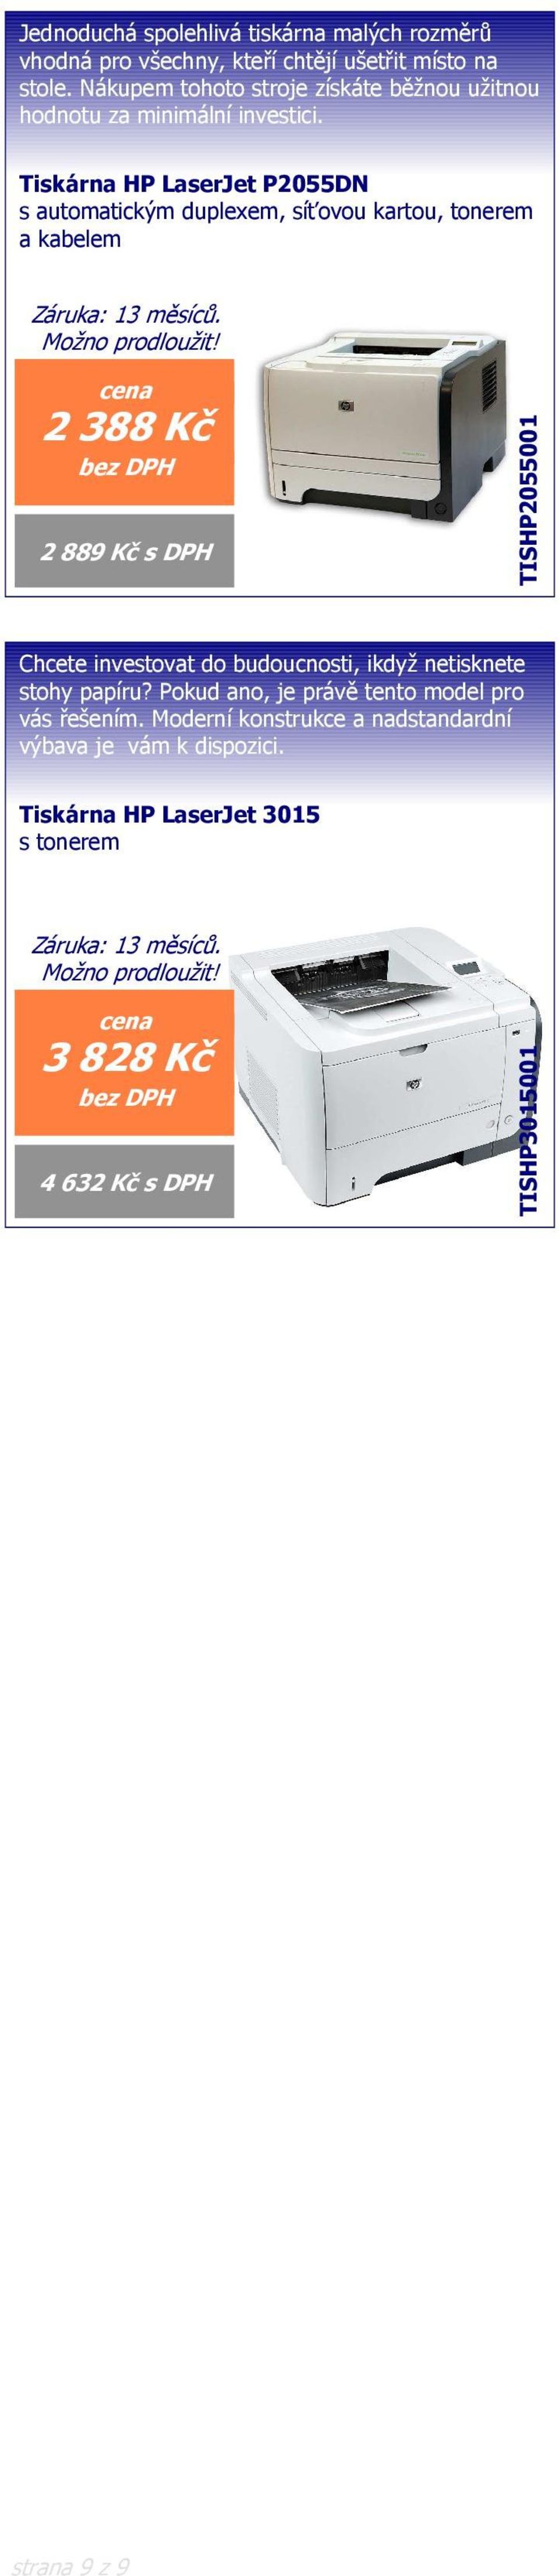 Tiskárna HP LaserJet P2055DN s automatickým duplexem, síťovou kartou, tonerem a kabelem 2388 Kč 2 889 Kč s DPH TISHP2055001 Chcete